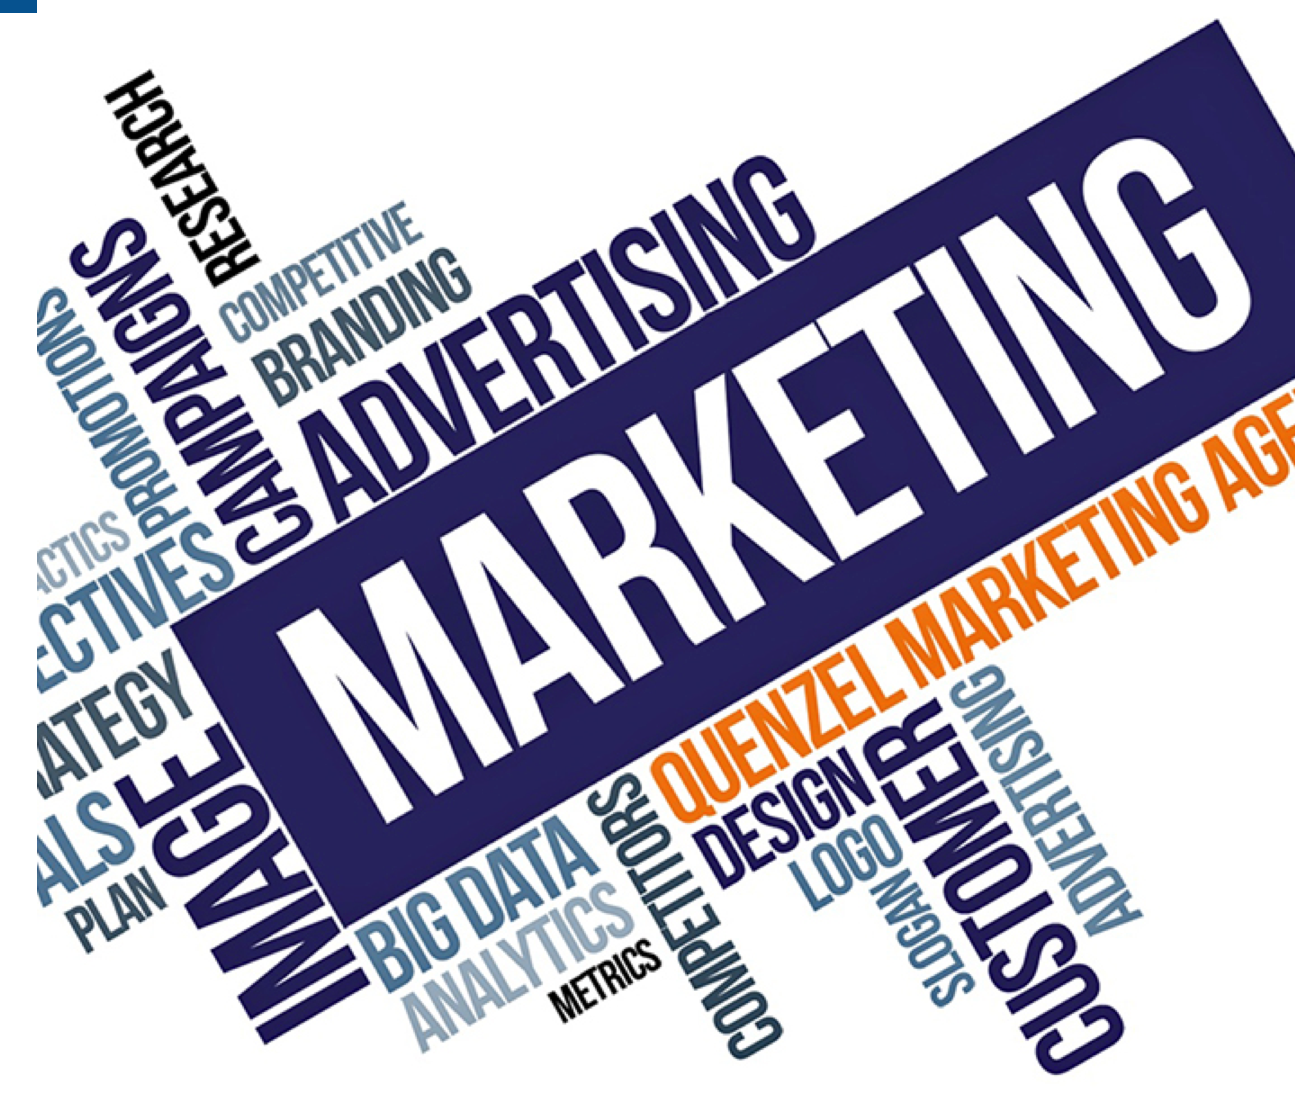 Chuyên đề Marketing Streetwise “Marketing Thời hiện đại”